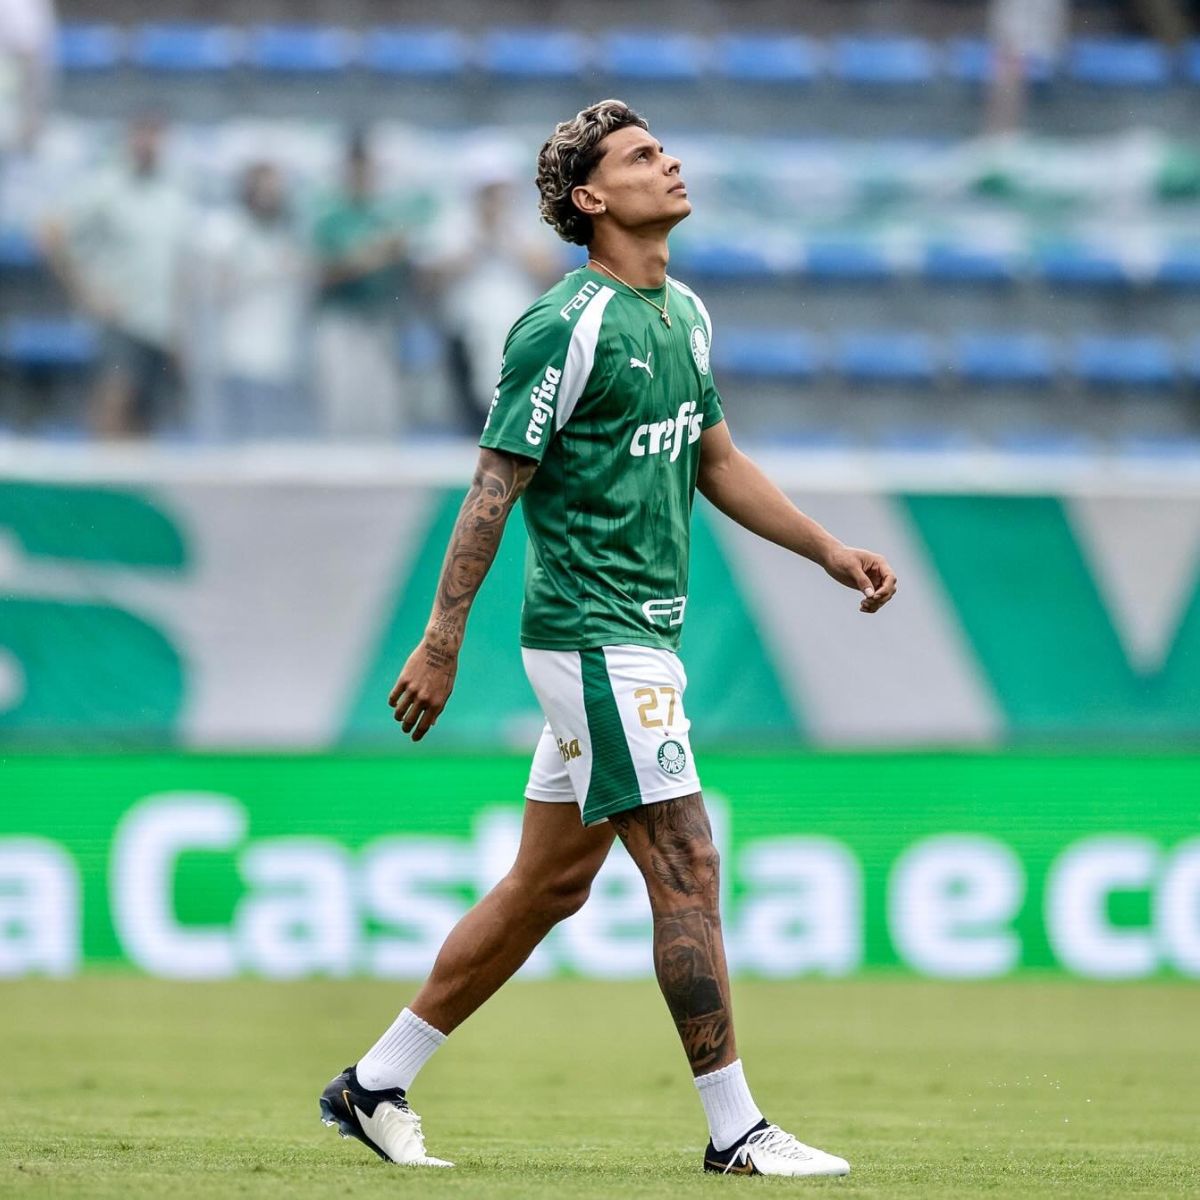 Richard Ríos Palmeiras selección Colombia - Richard Ríos: Palmeiras rechazó la primera oferta y Europa se aleja; €21 millones no alcanzaron